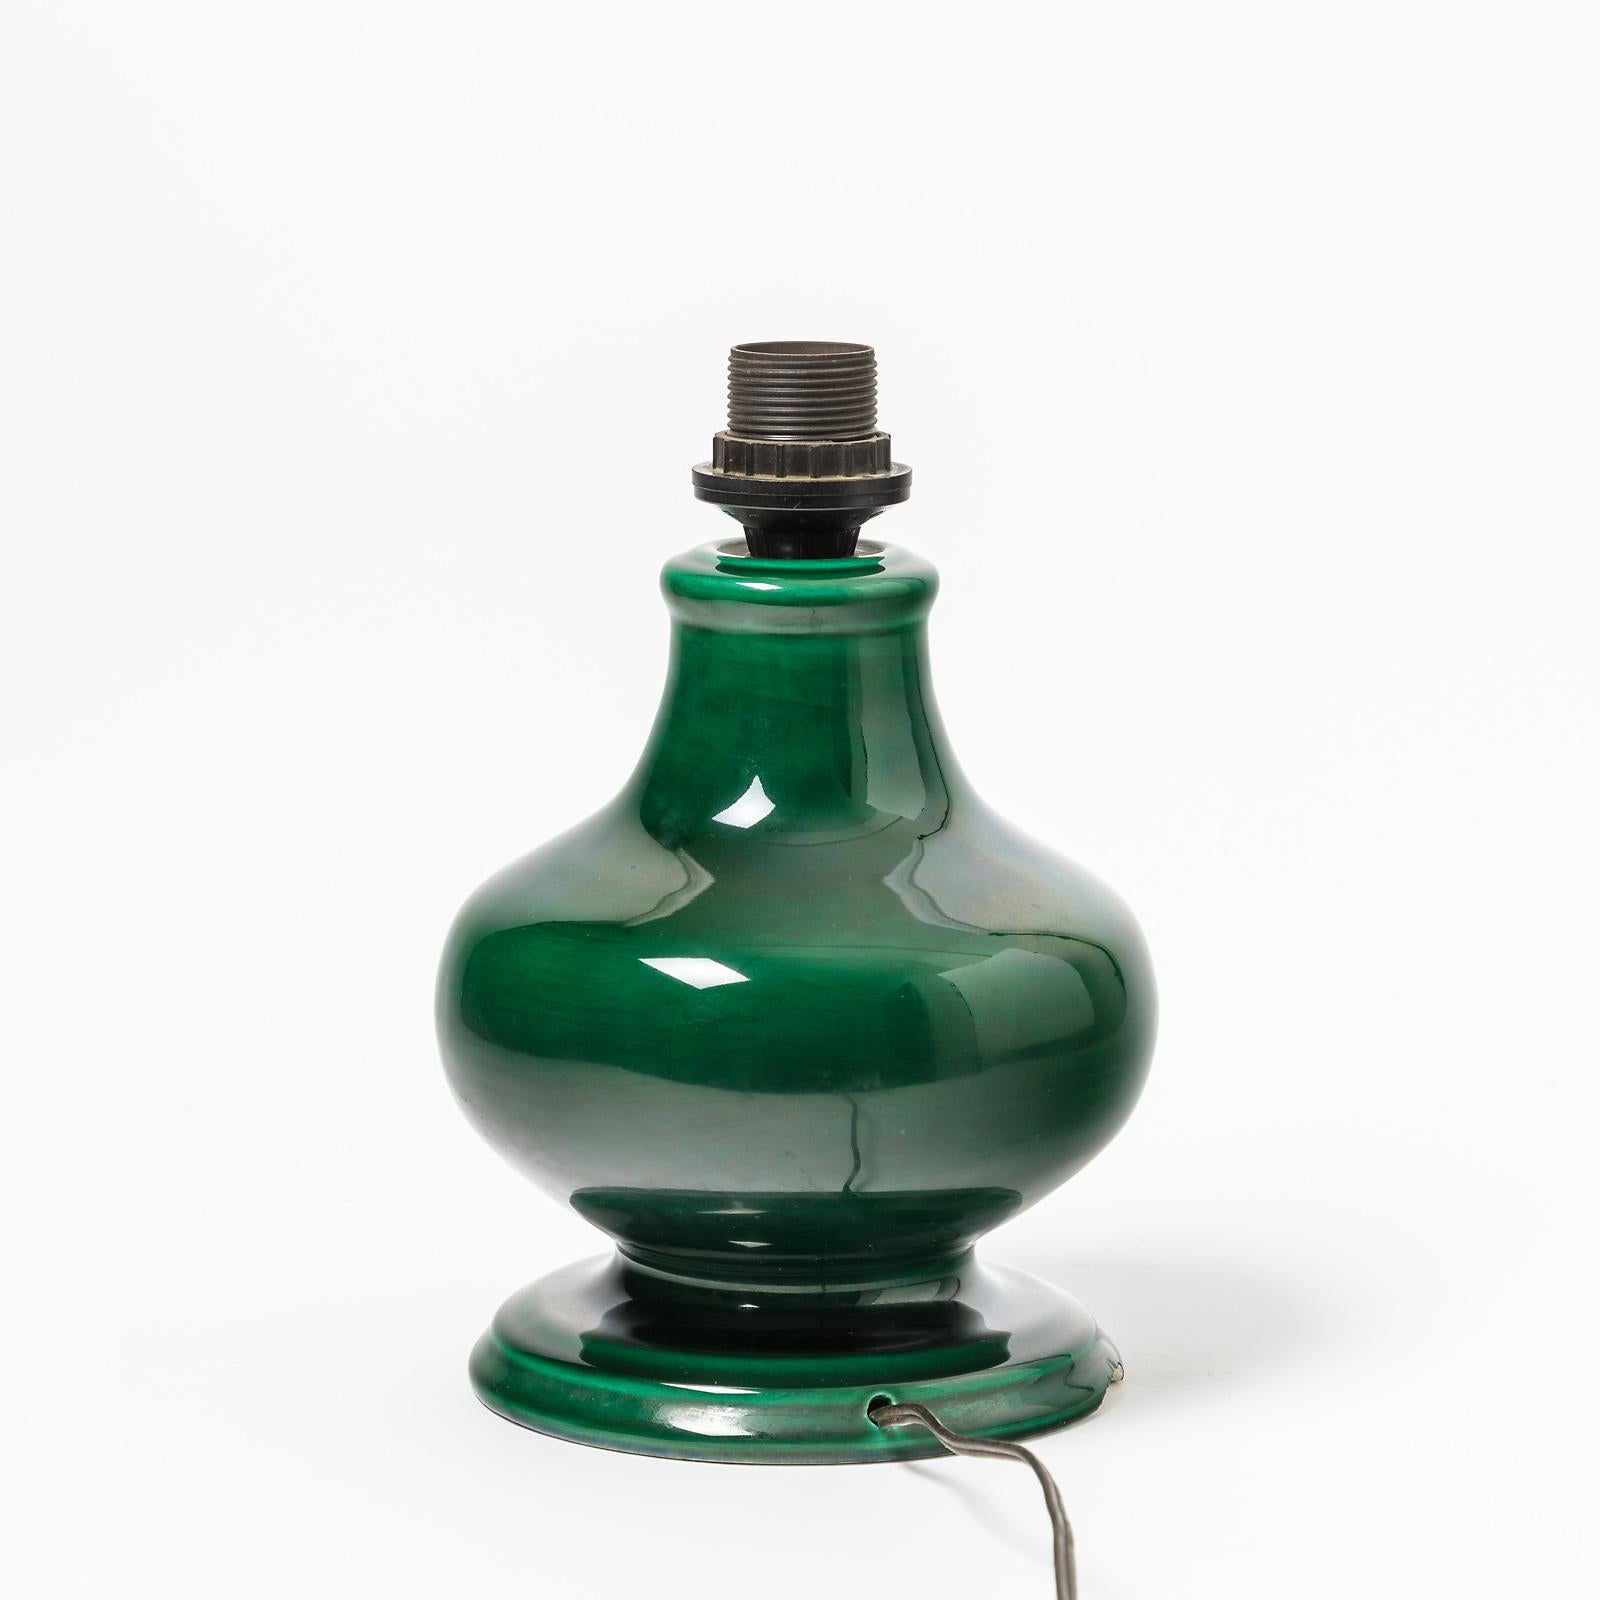 Une lampe en céramique avec une décoration en glaçure verte.
Vallauris, France.
Conditions d'origine parfaites,
vers 1960-1970.
Signé sous la base XF.
Vendu avec un nouveau système électrique européen.
Les dimensions sont mentionnées